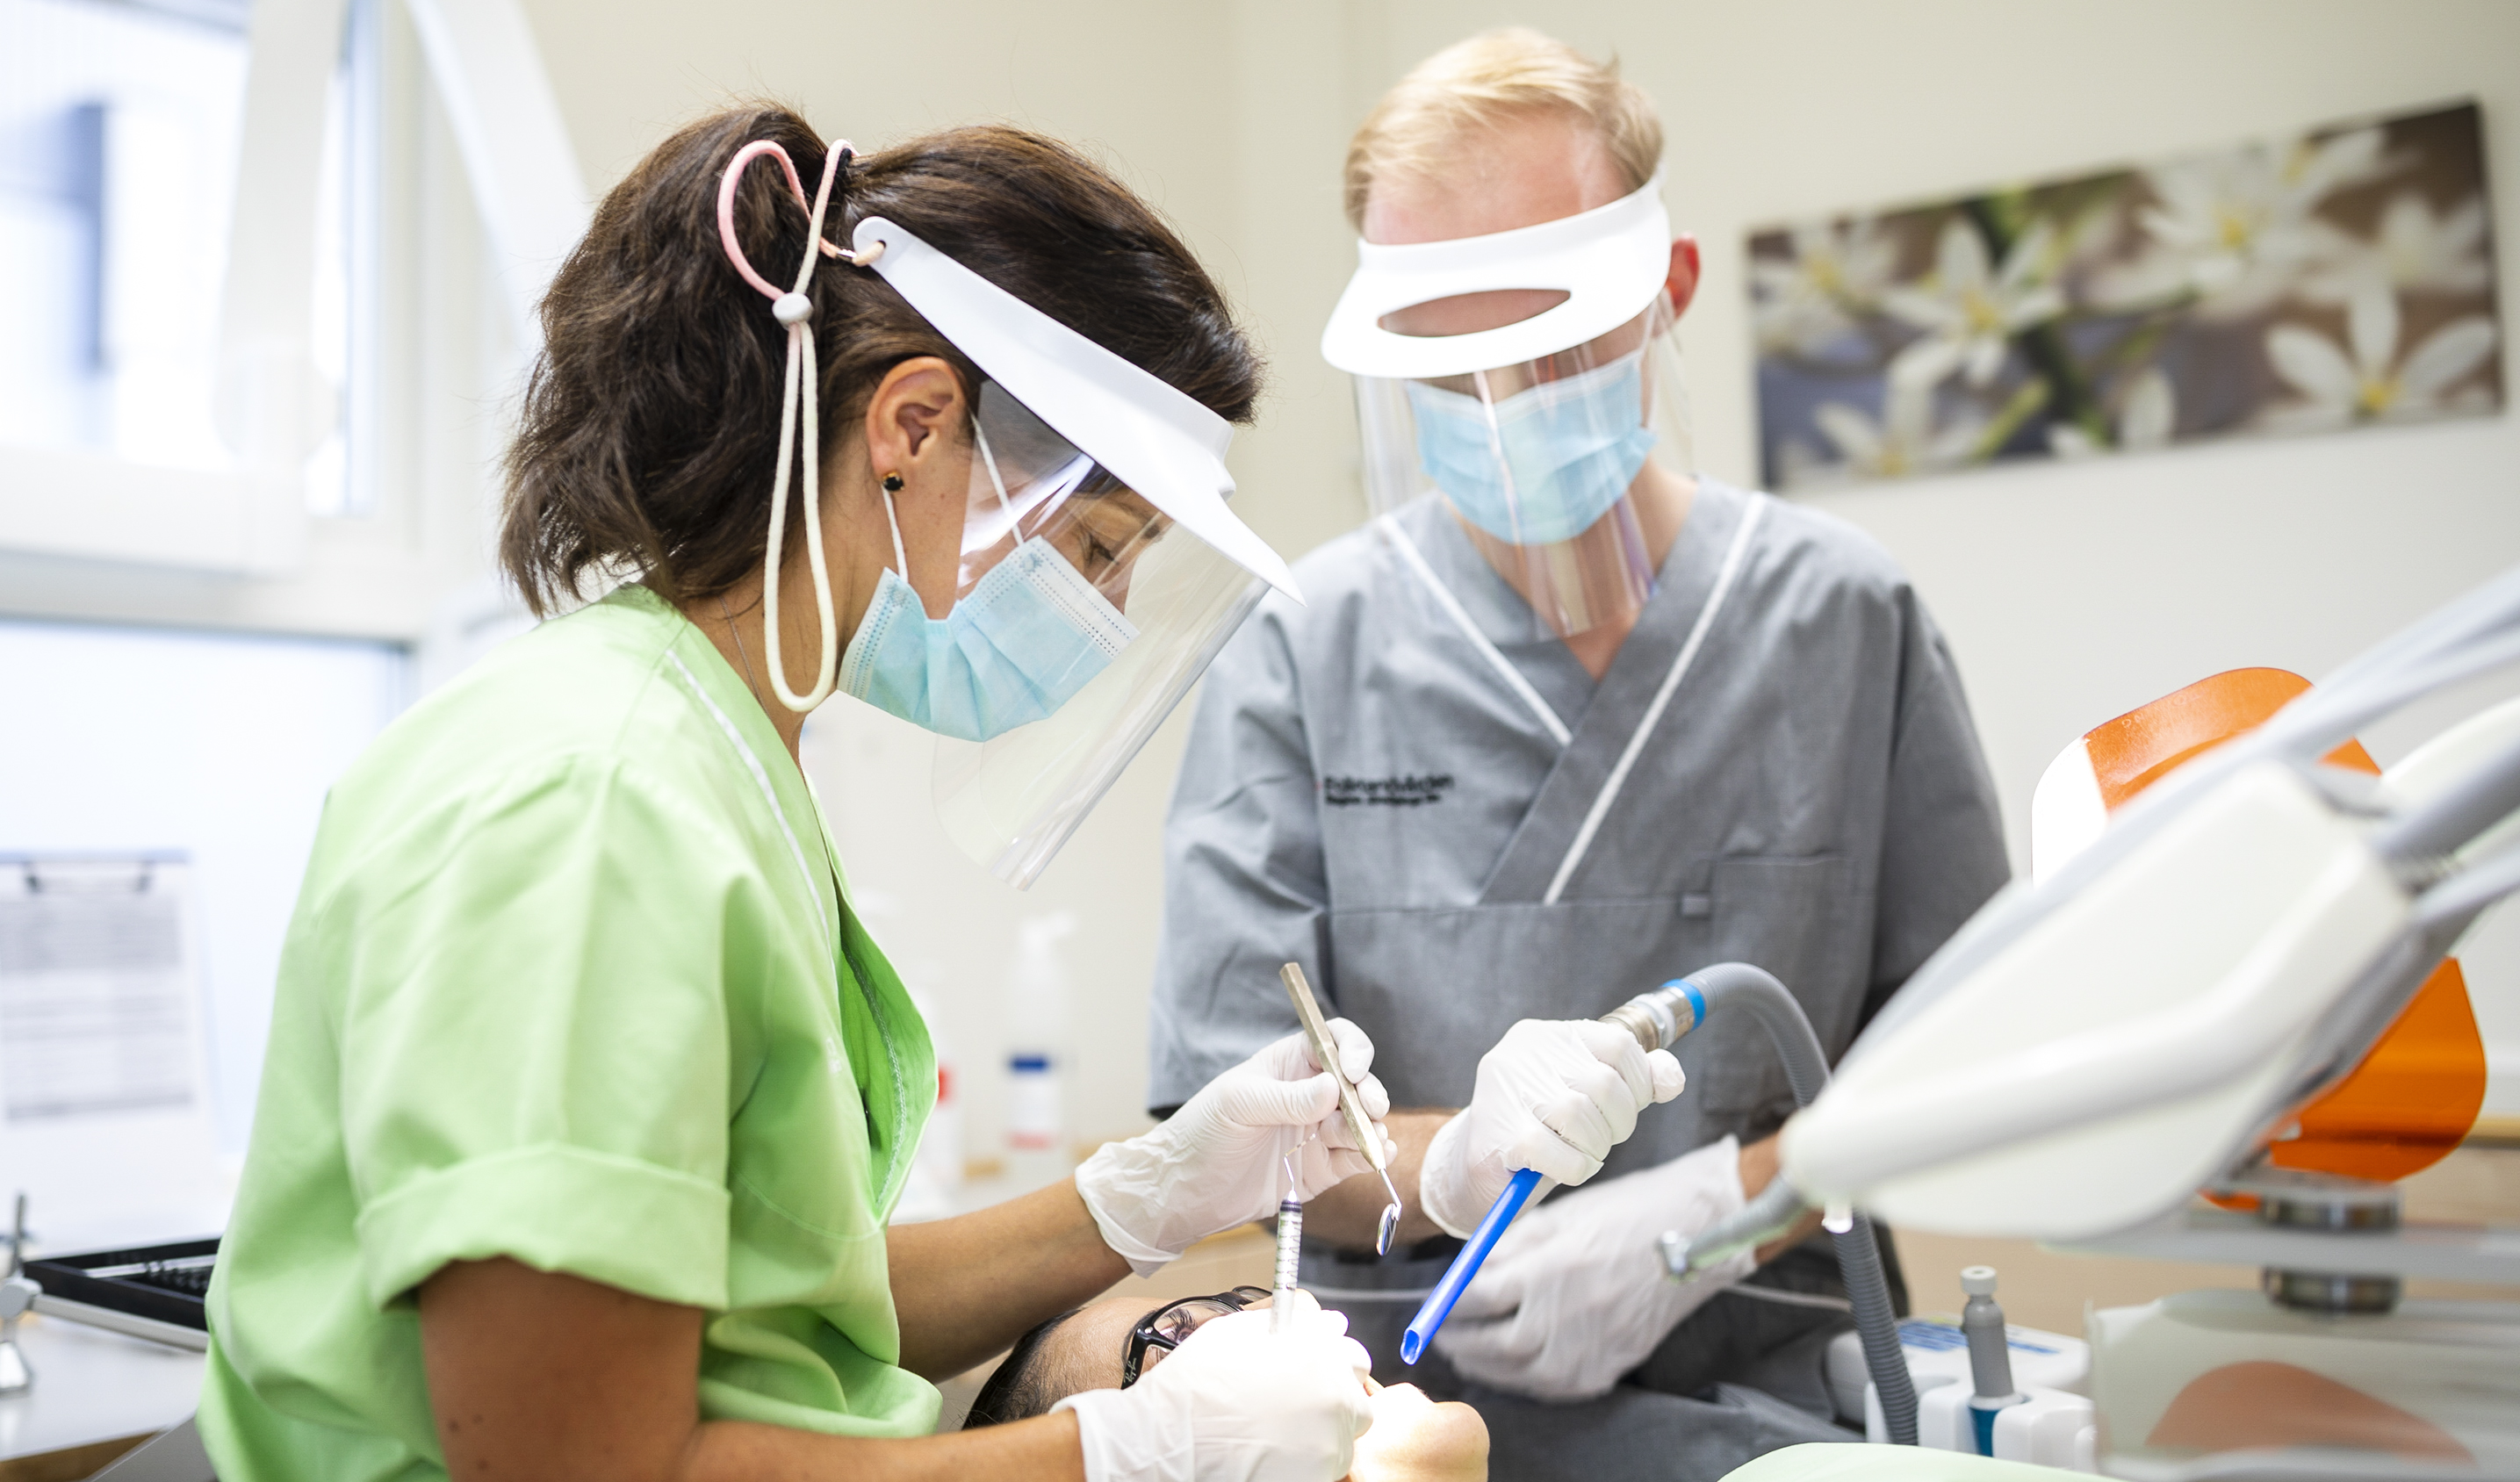 Två personer, en man och en kvinna, i ett behandlingsrum. De utför en behandling på en patient som ligger i tandläkarstolen. Båda behandlarna har visir på sig och tittar ner på patienten.